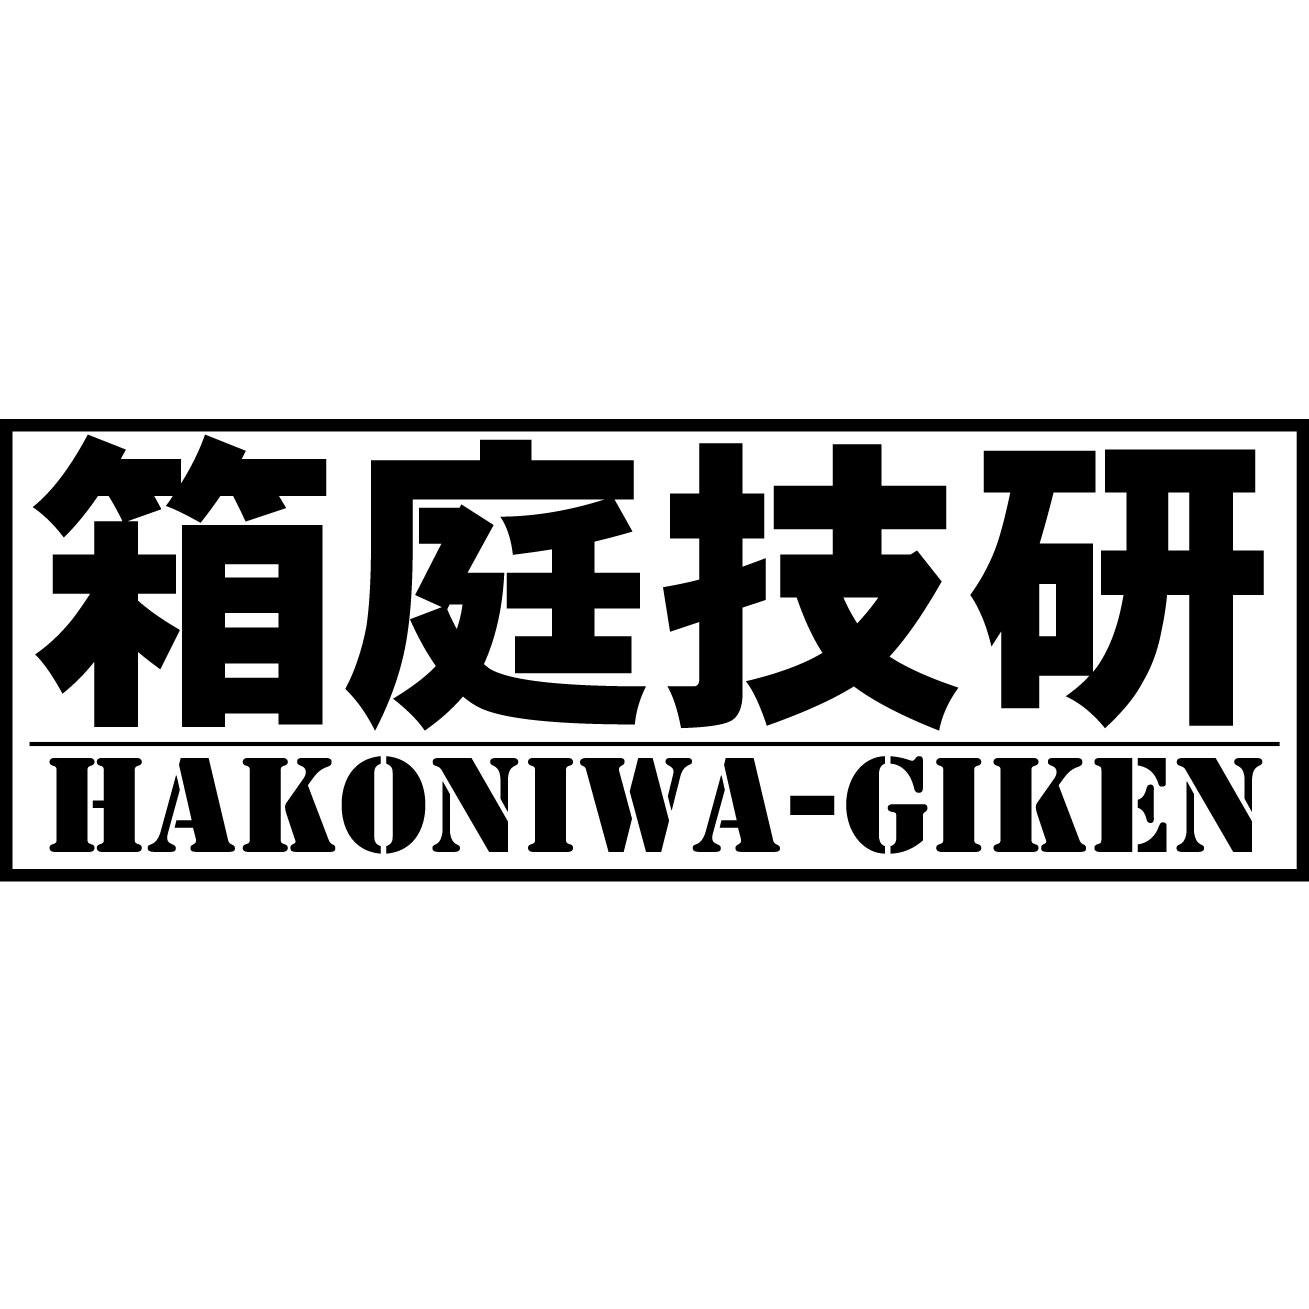 箱庭技研 hakoniwagikenさんのプロフィール画像